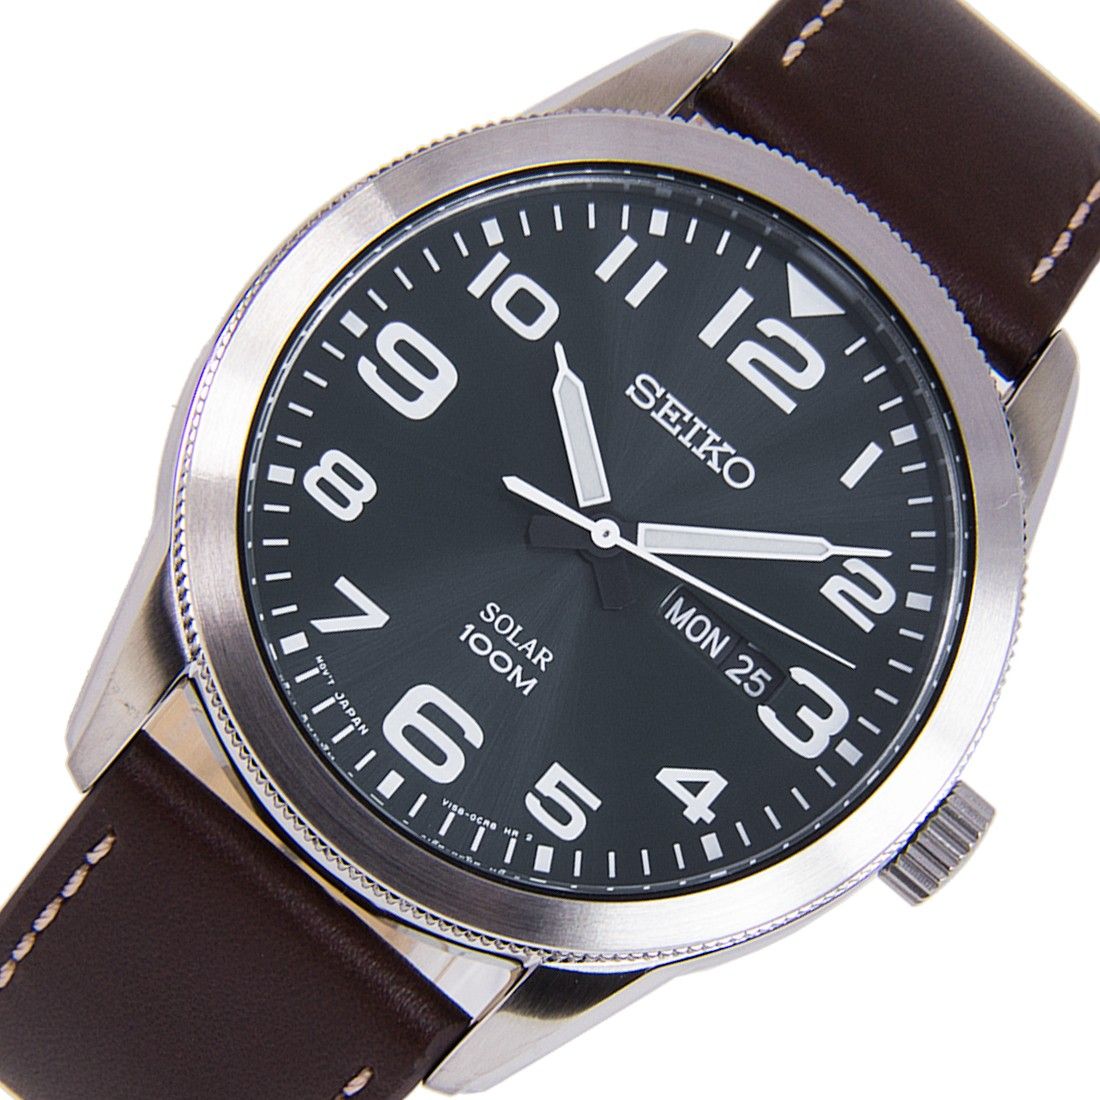 SEIKO SNE475P1 – Hệ thống đồng hồ chính hãng